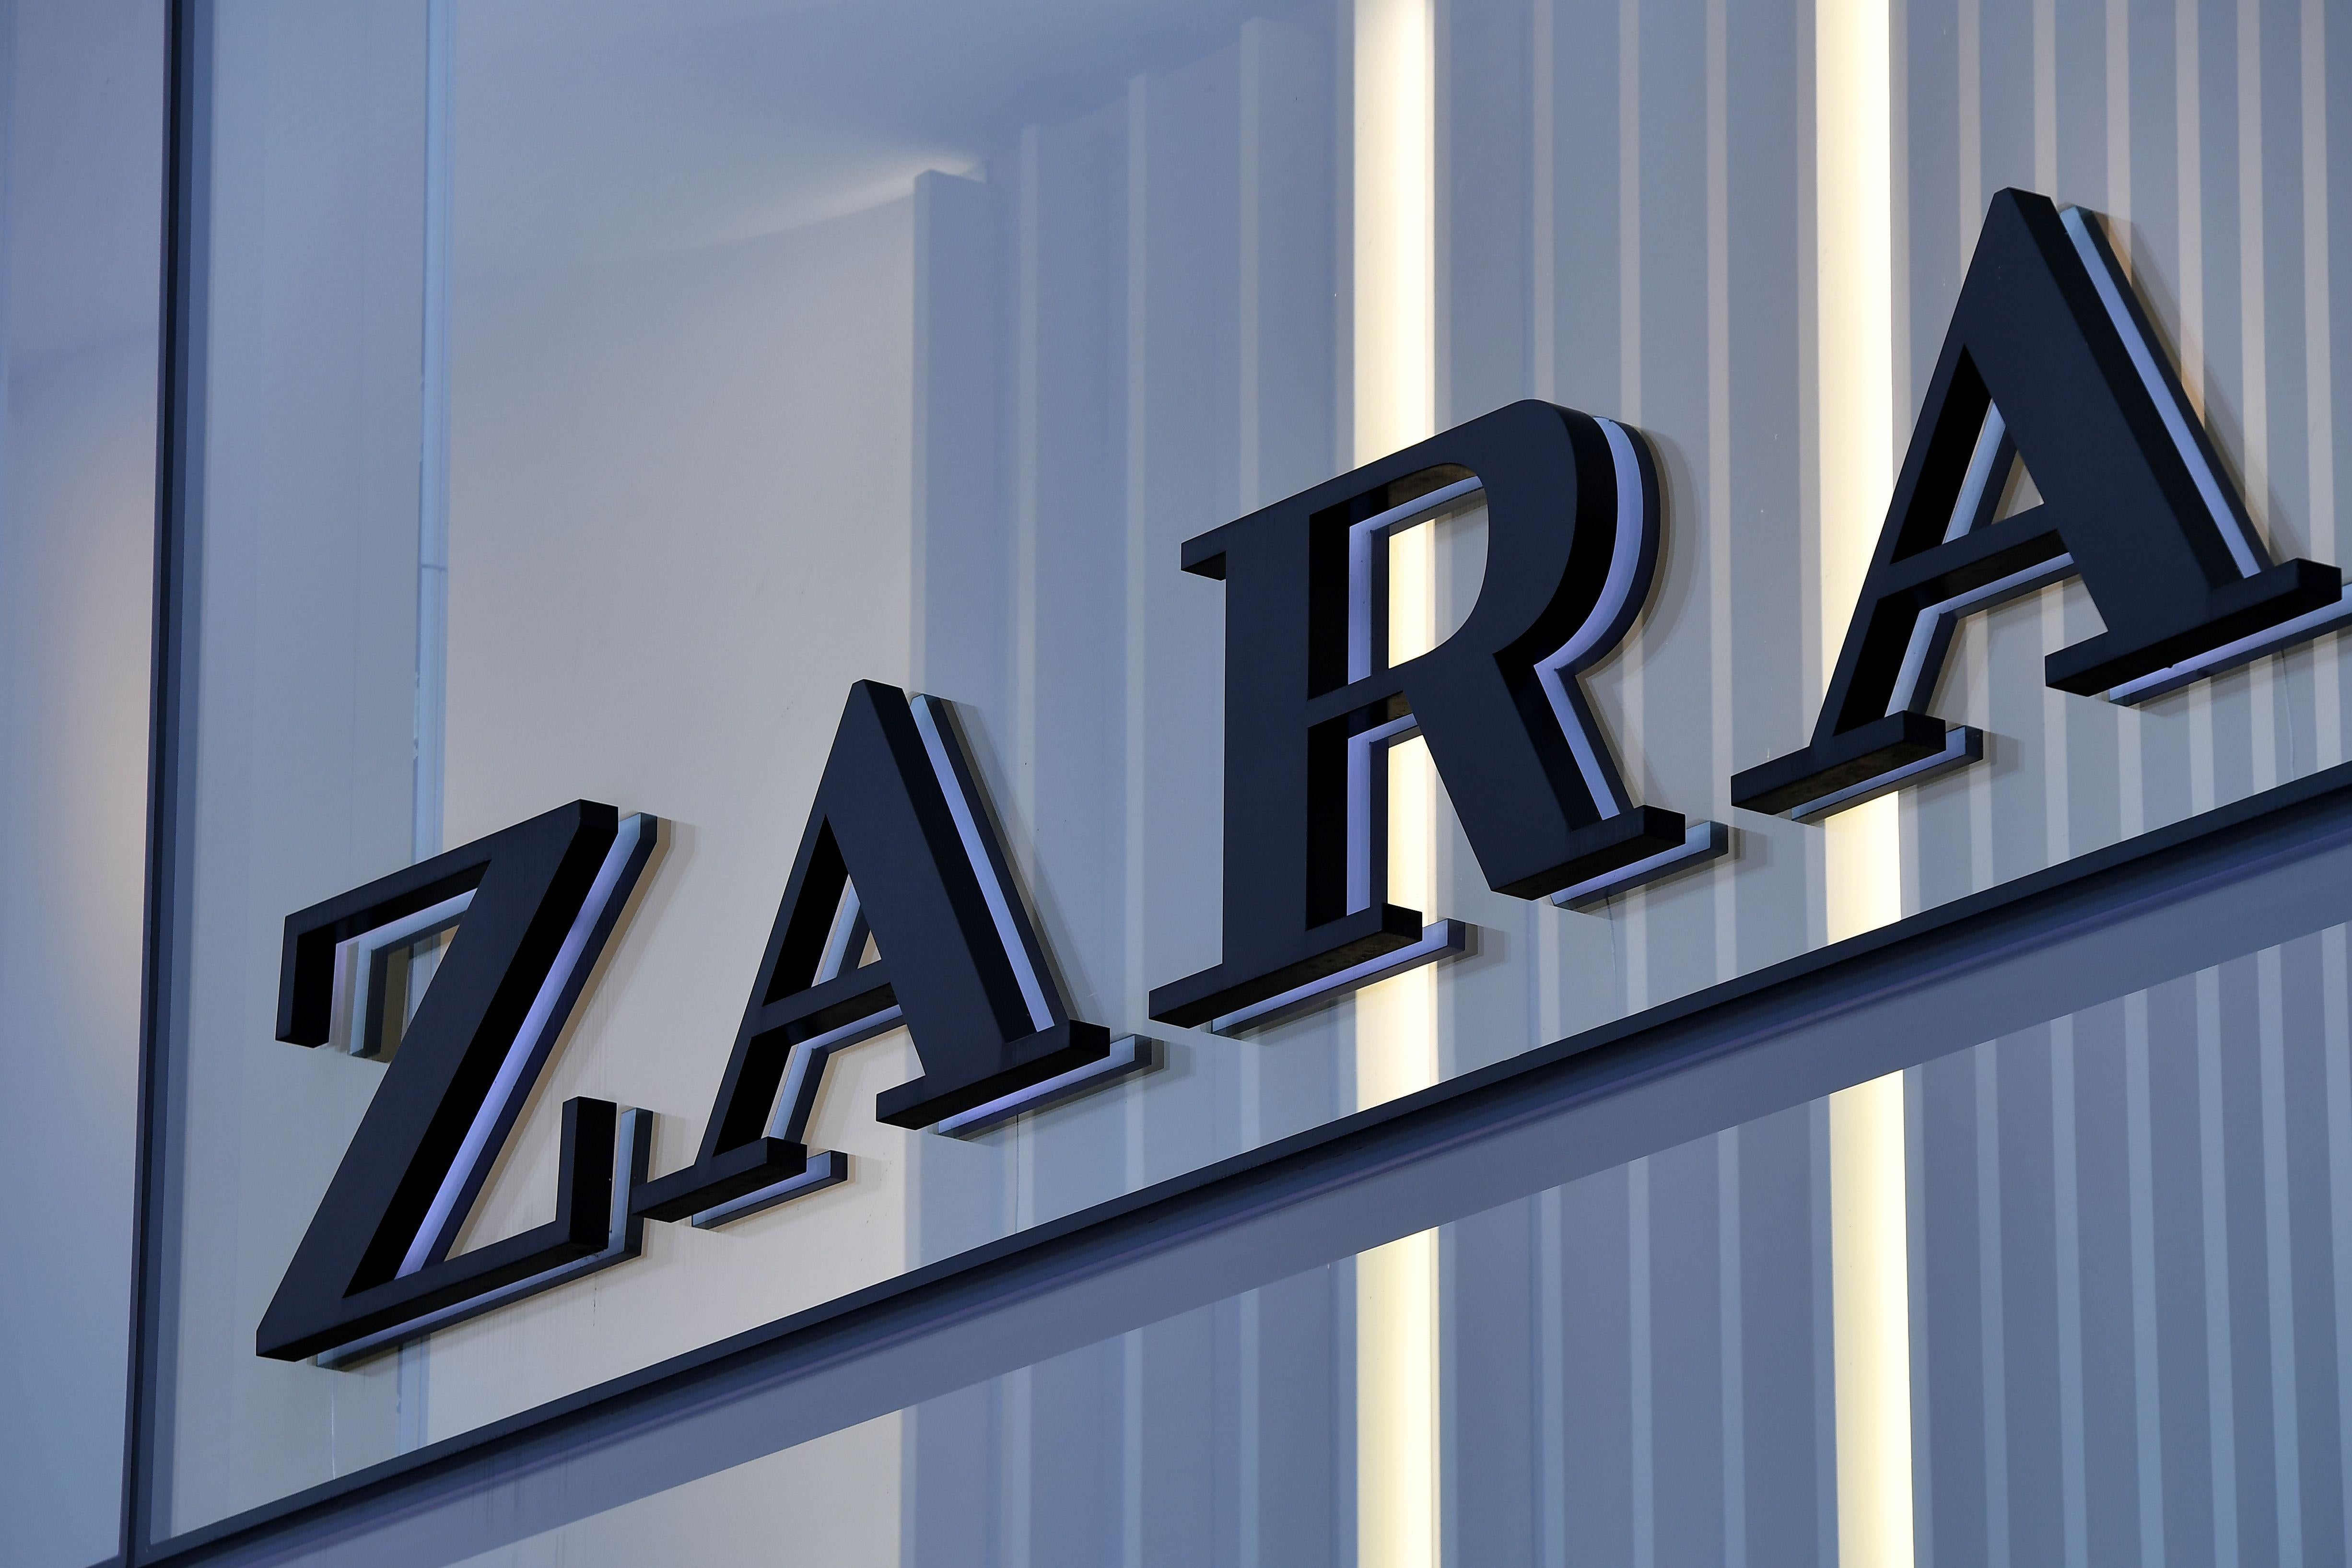 The Zara logo on the facade of a store.